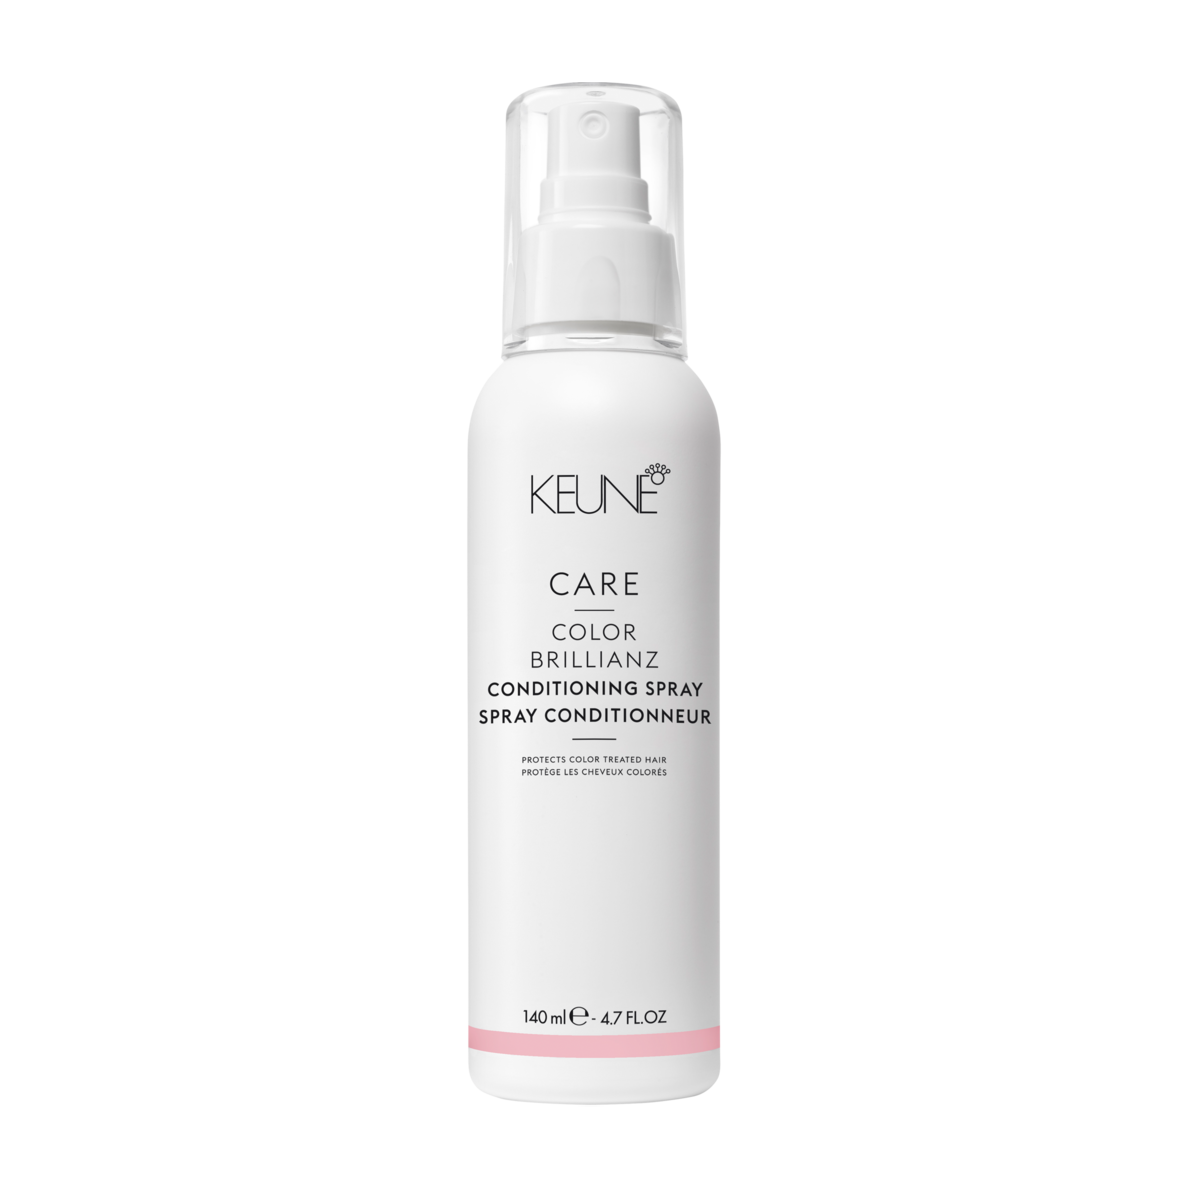 Keune Care Color Brillianz Conditioning Spray CFH Care For Hair